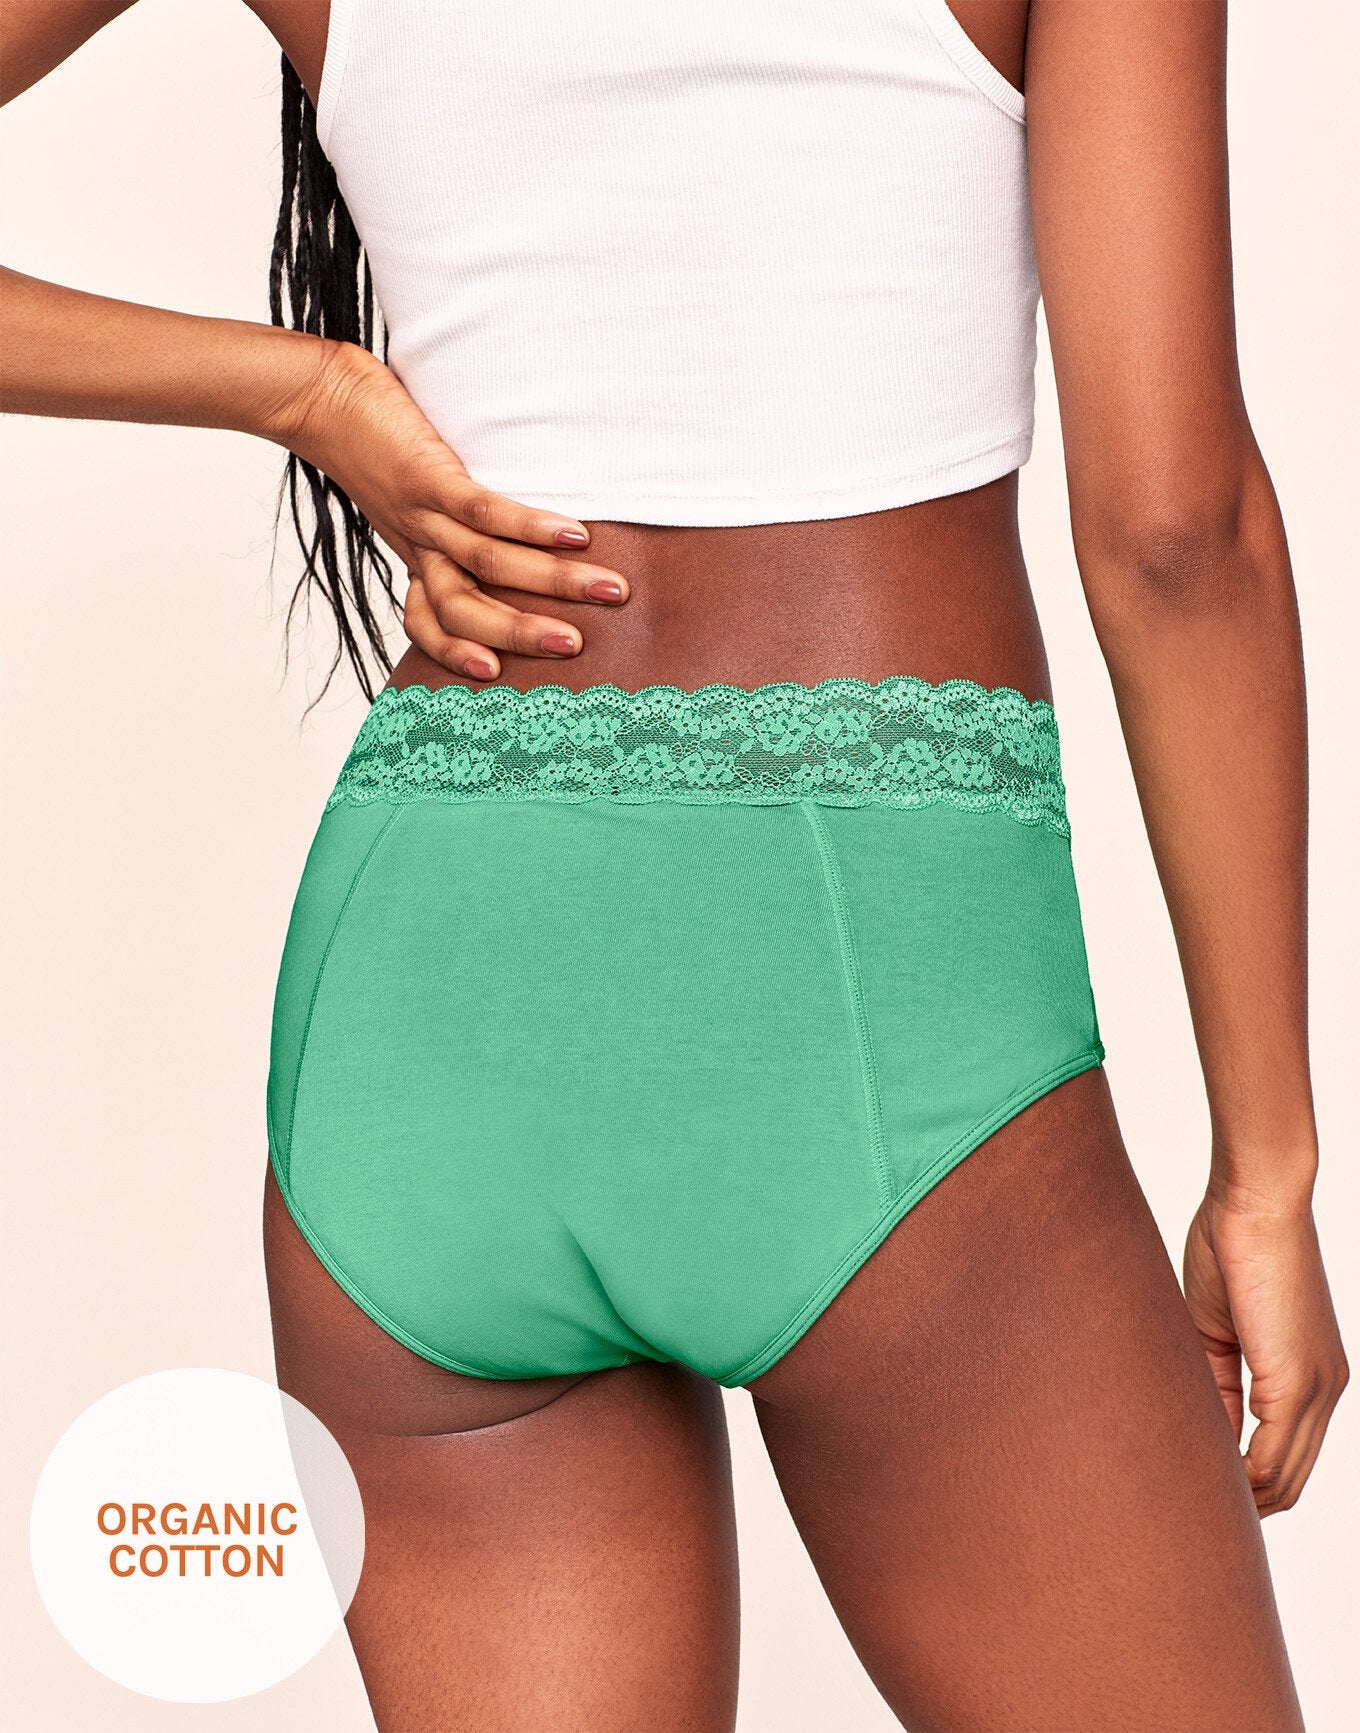 Joyja Ella period-proof panty in color Jade Cream and shape midi brief